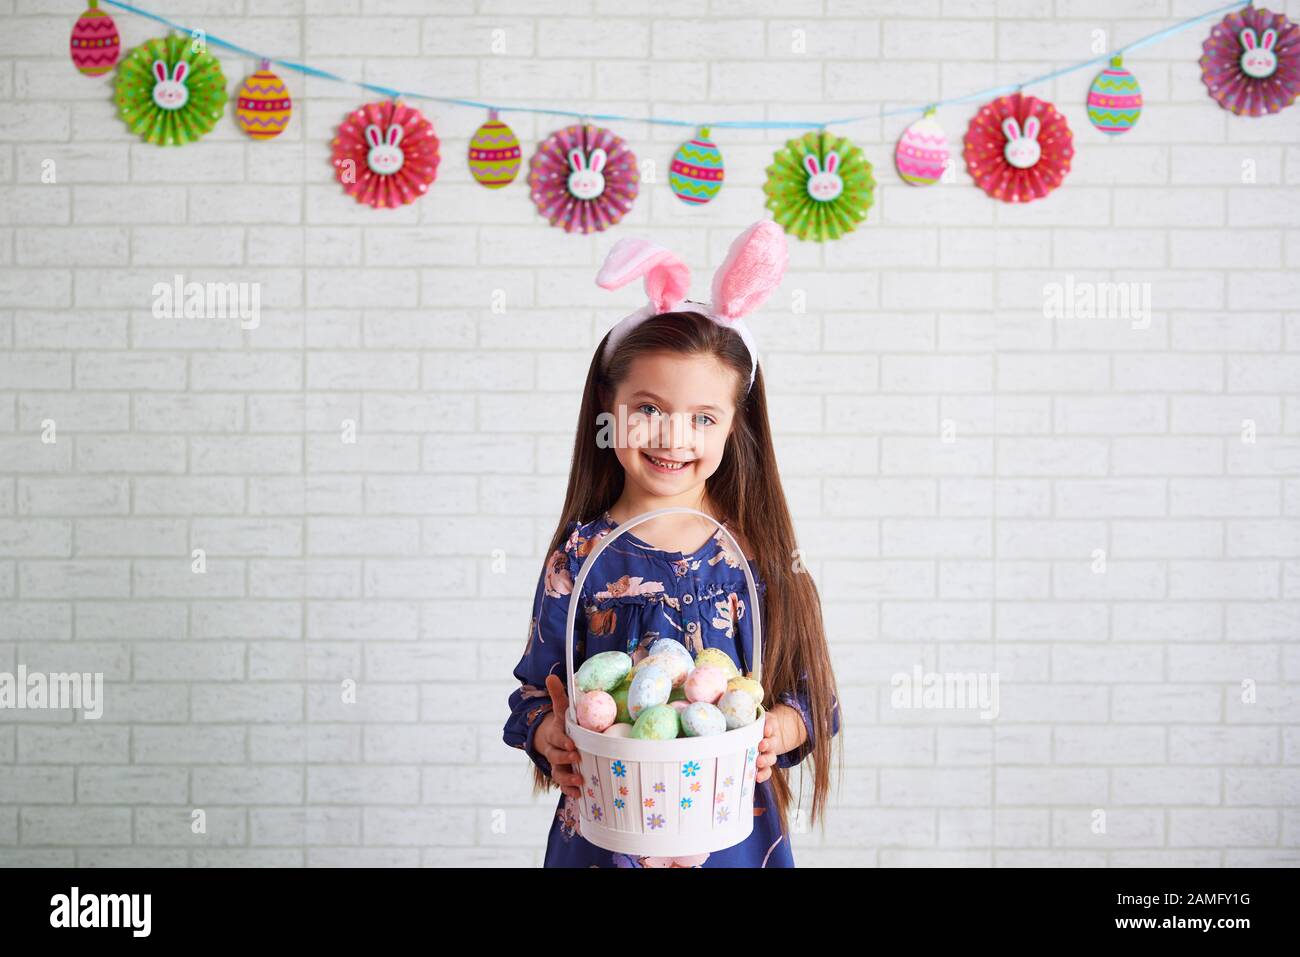 Portrait d'un enfant souriant tenant un panier d'œufs de pâques Banque D'Images